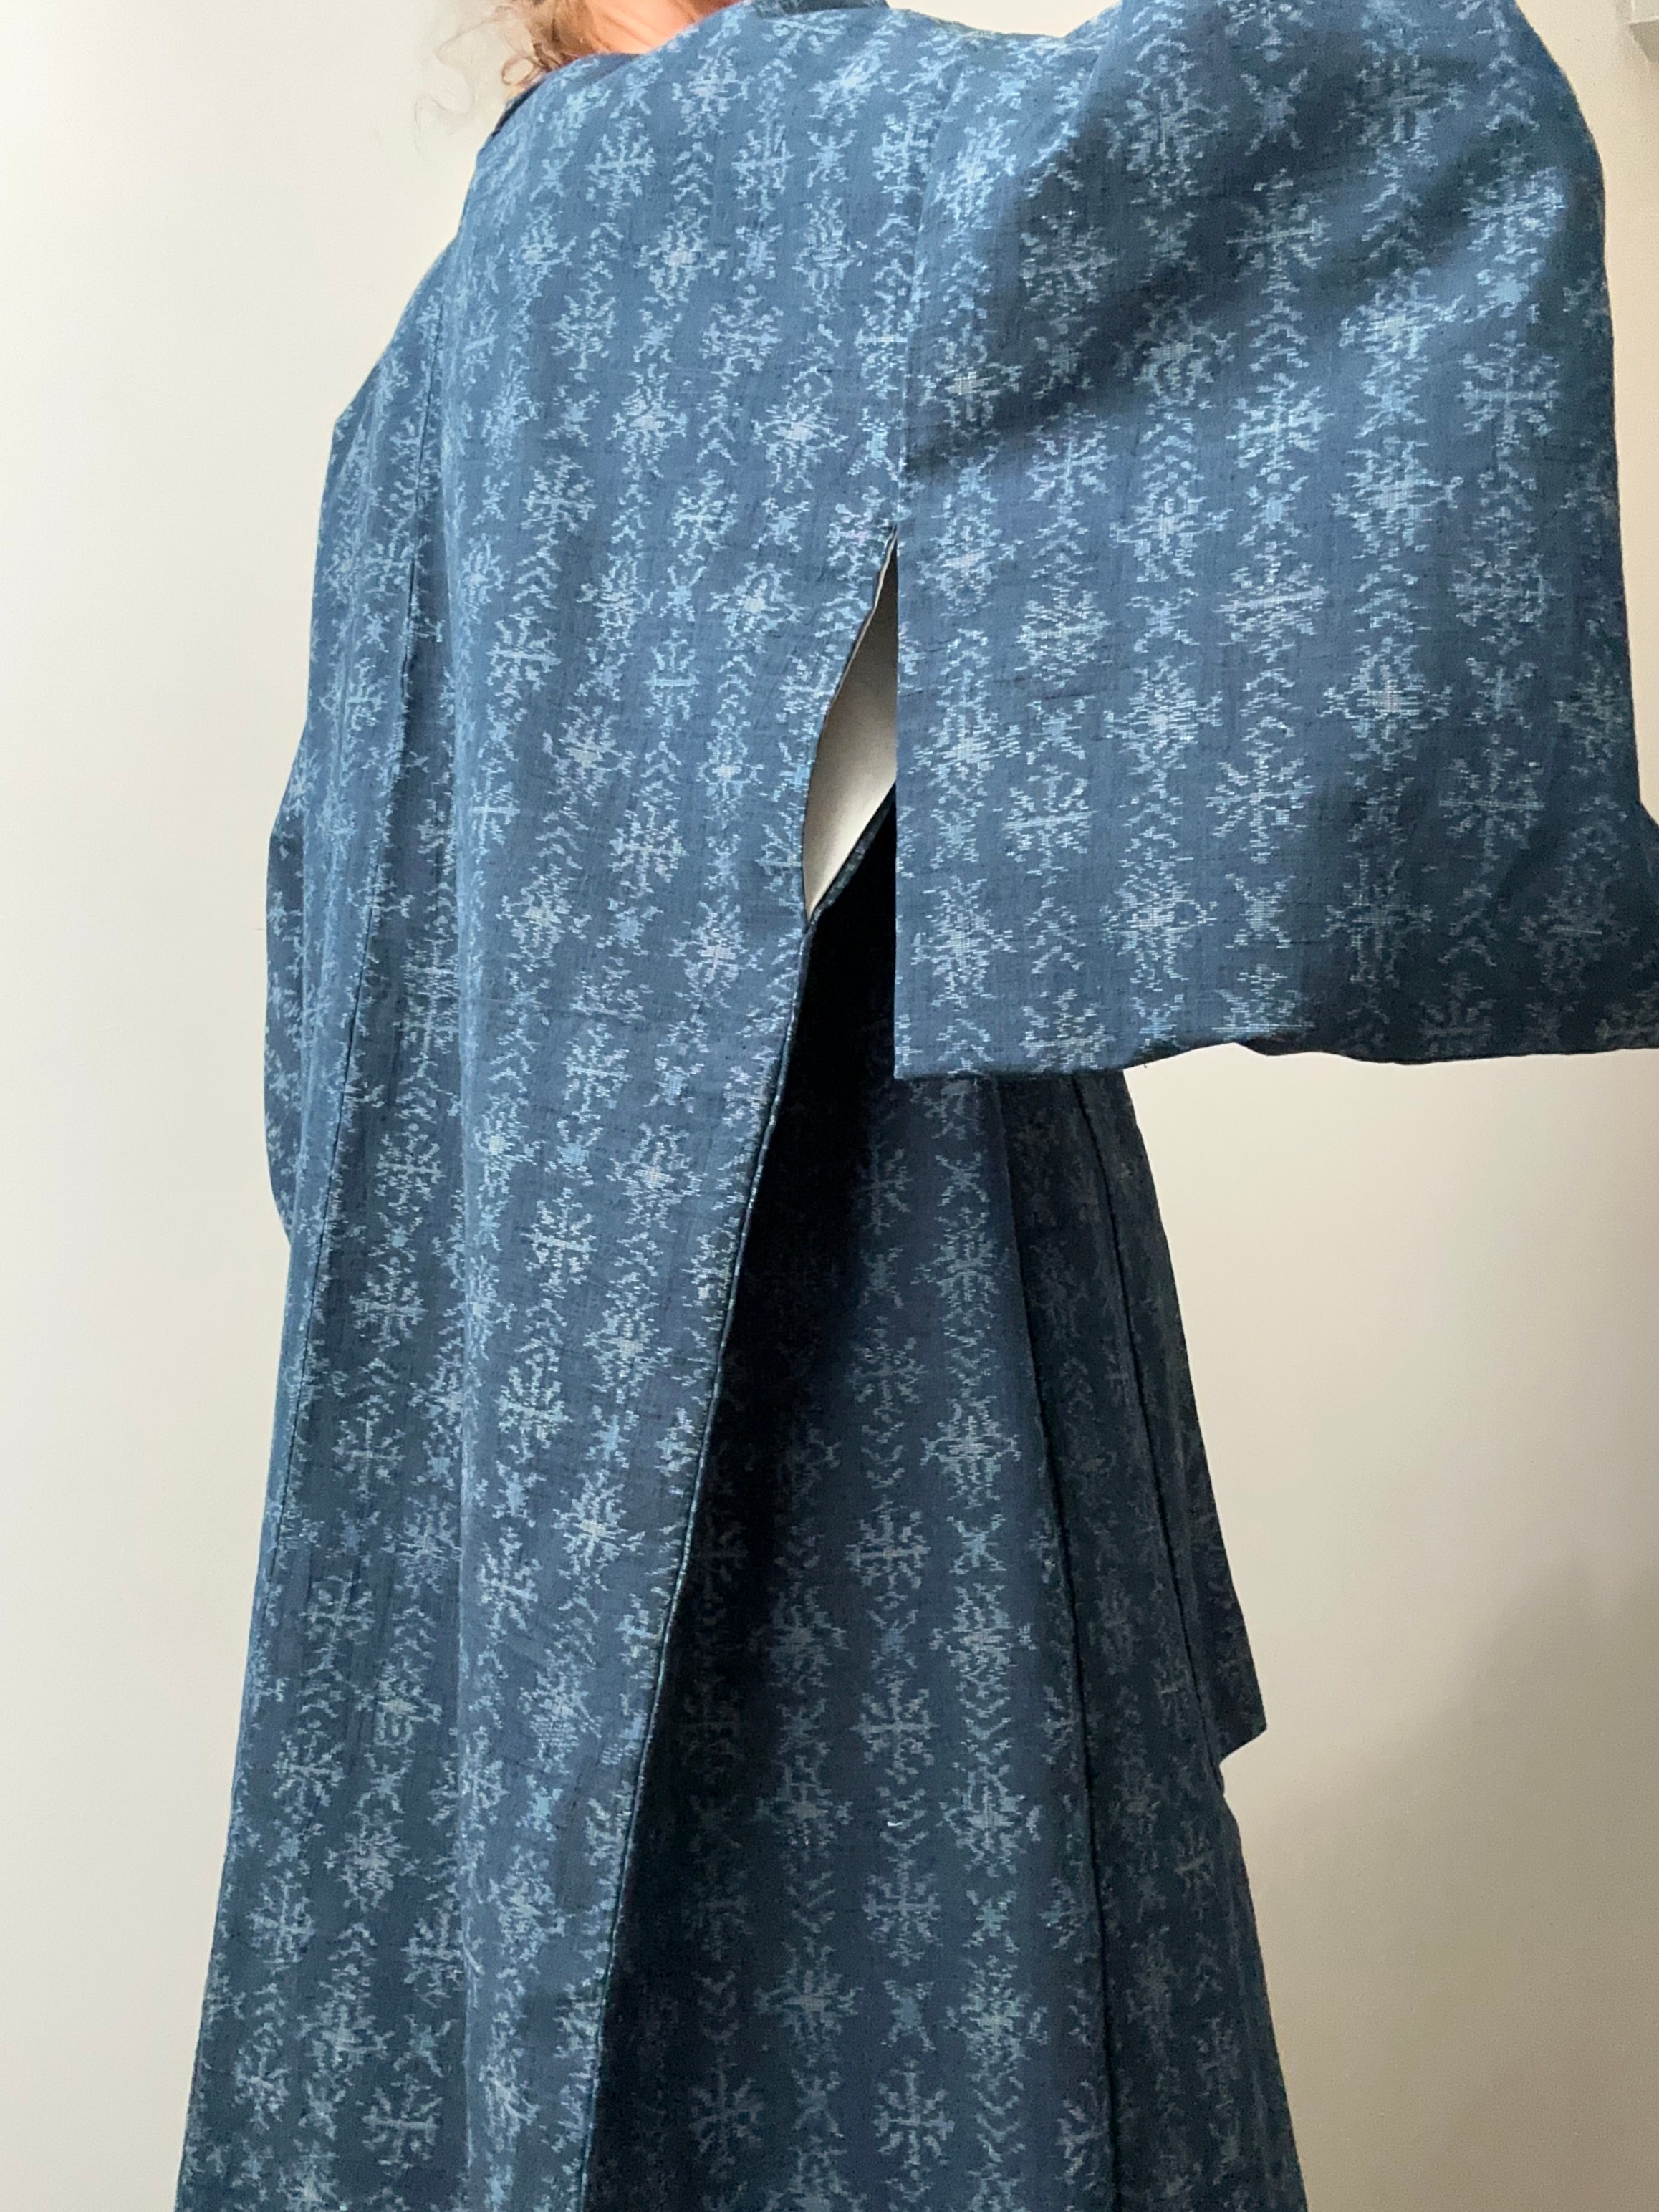 Future Nomads Kimonos Free Size Indigo Blue Batik Japanese Kimono